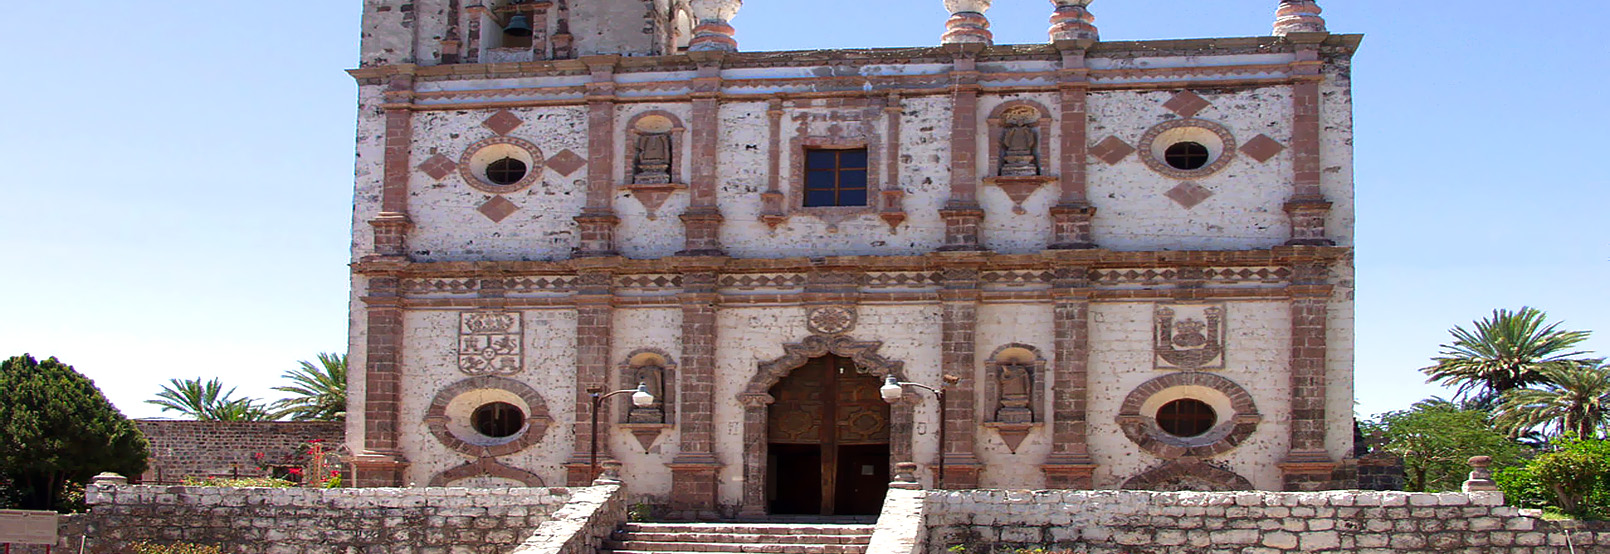 Arquitectura Colonial Baja California Sur 4